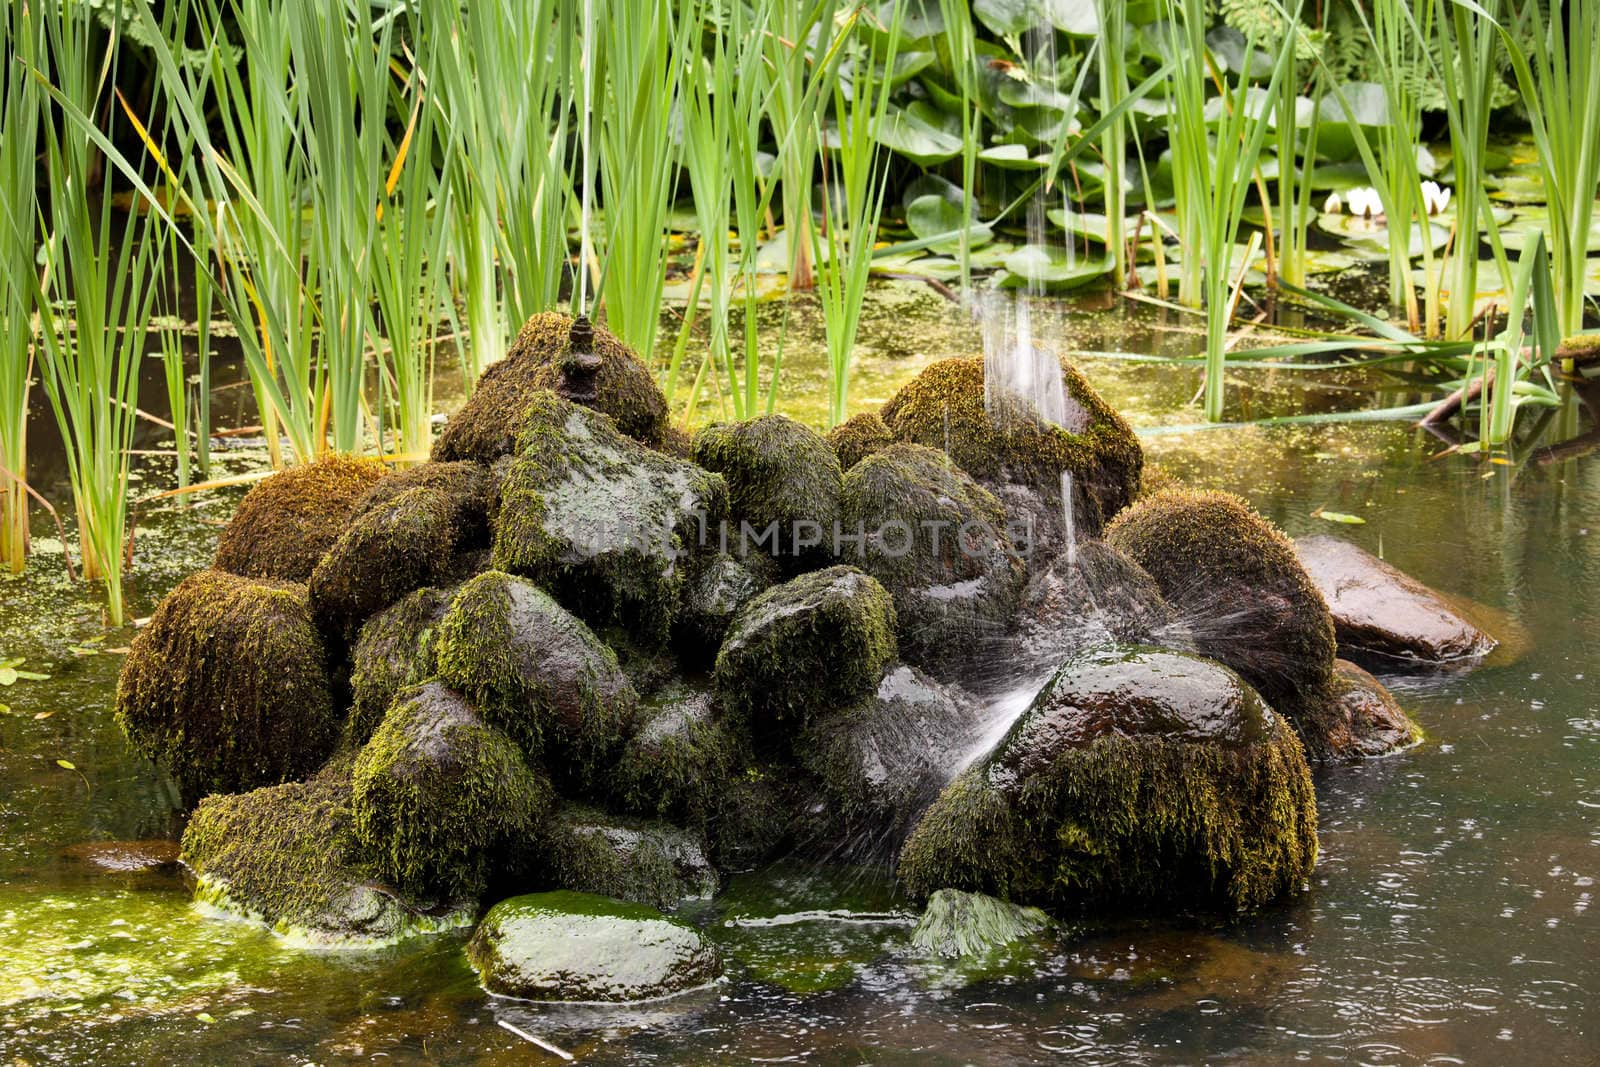 Fountain landing on mossy rocks by steheap